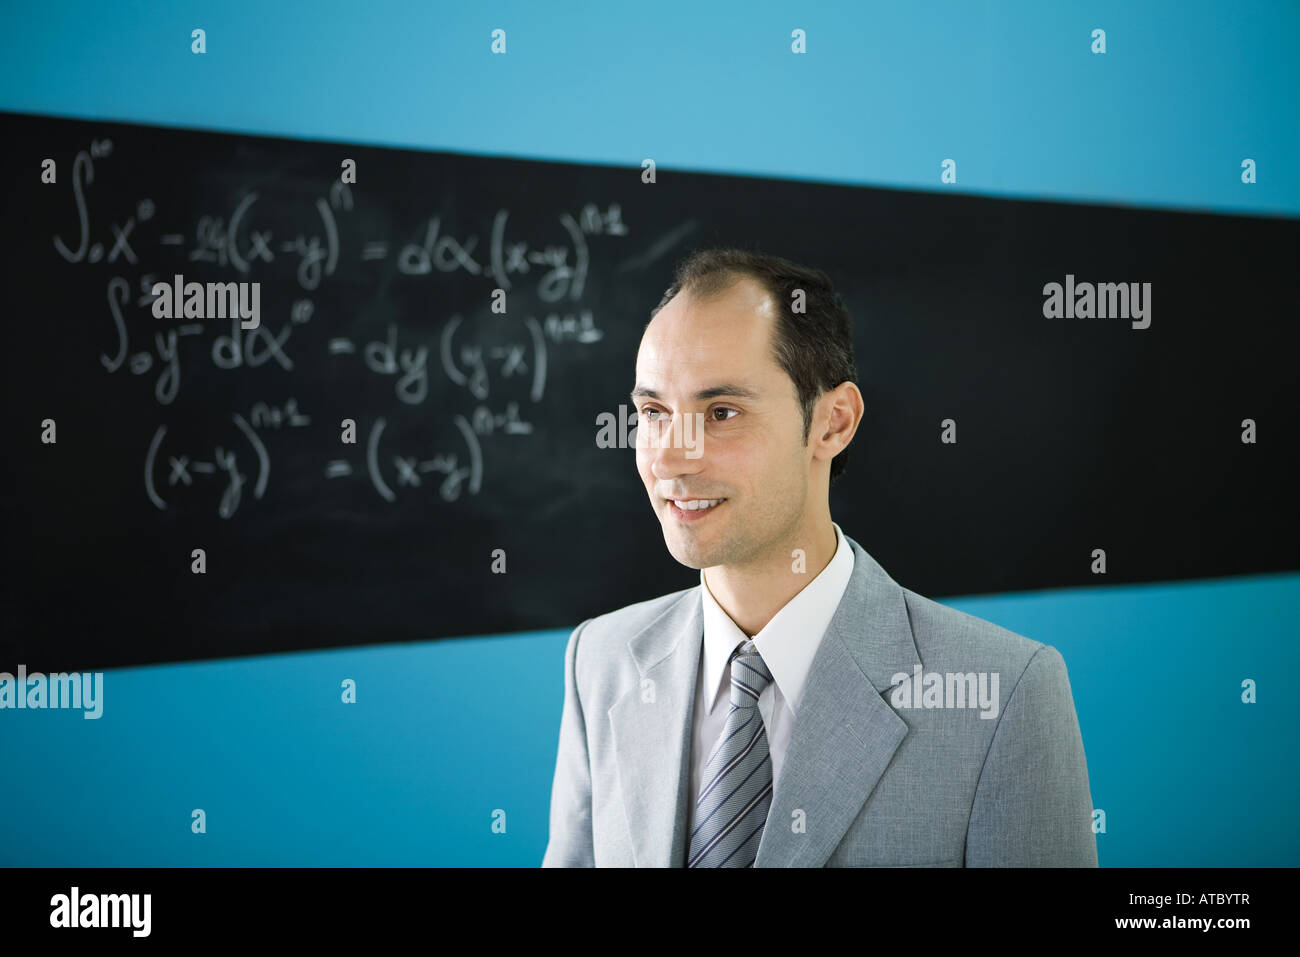 Man looking away, smiling, équation mathématique sur tableau noir en arrière-plan Banque D'Images